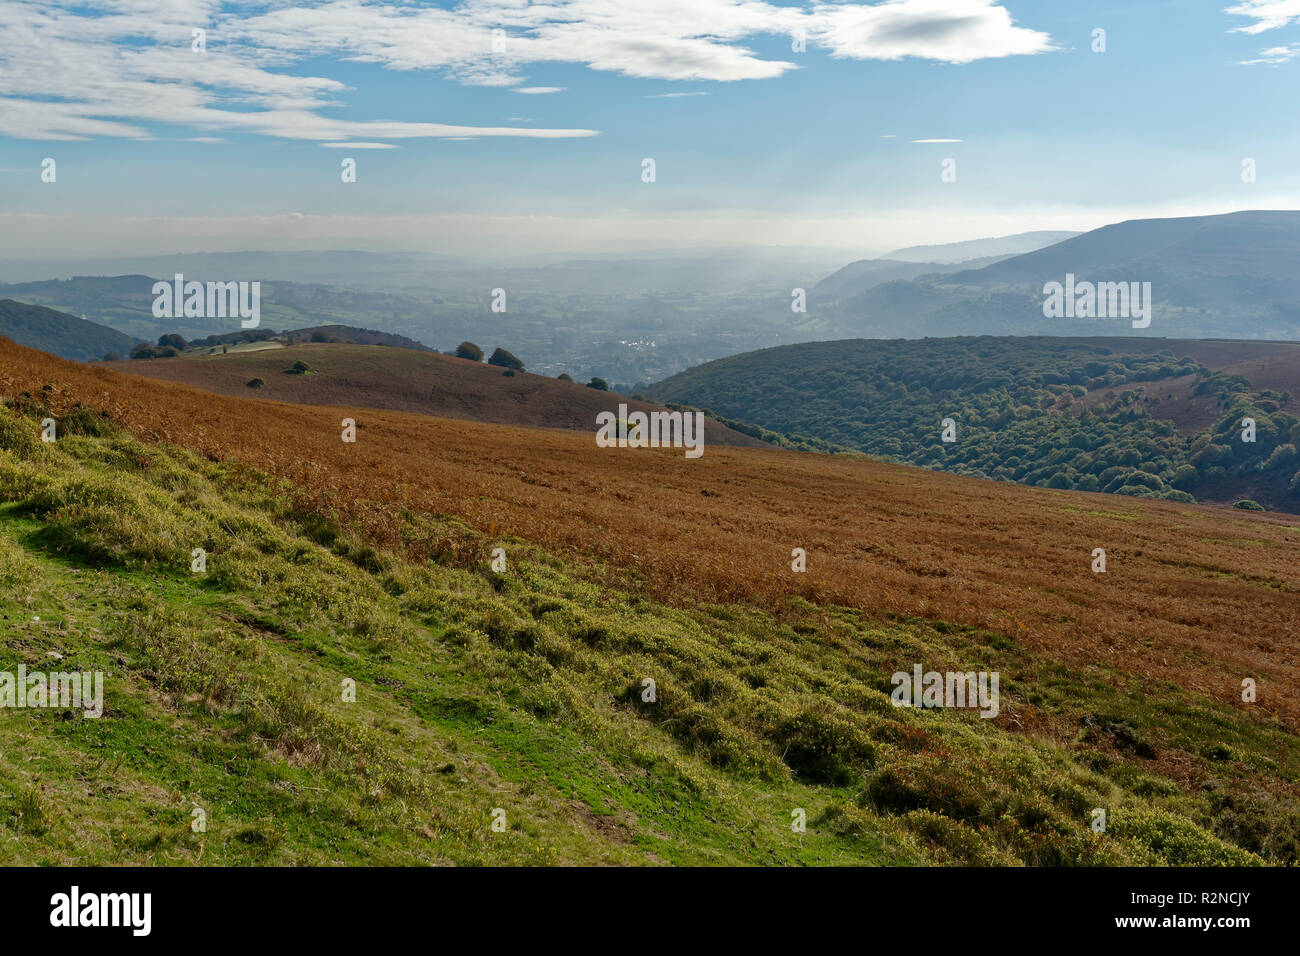 Vue sur Abergavenny à partir de pain de sucre avec Blorenge (561M) sur la droite, le Pays de Galles Monmouthshire horizon Banque D'Images